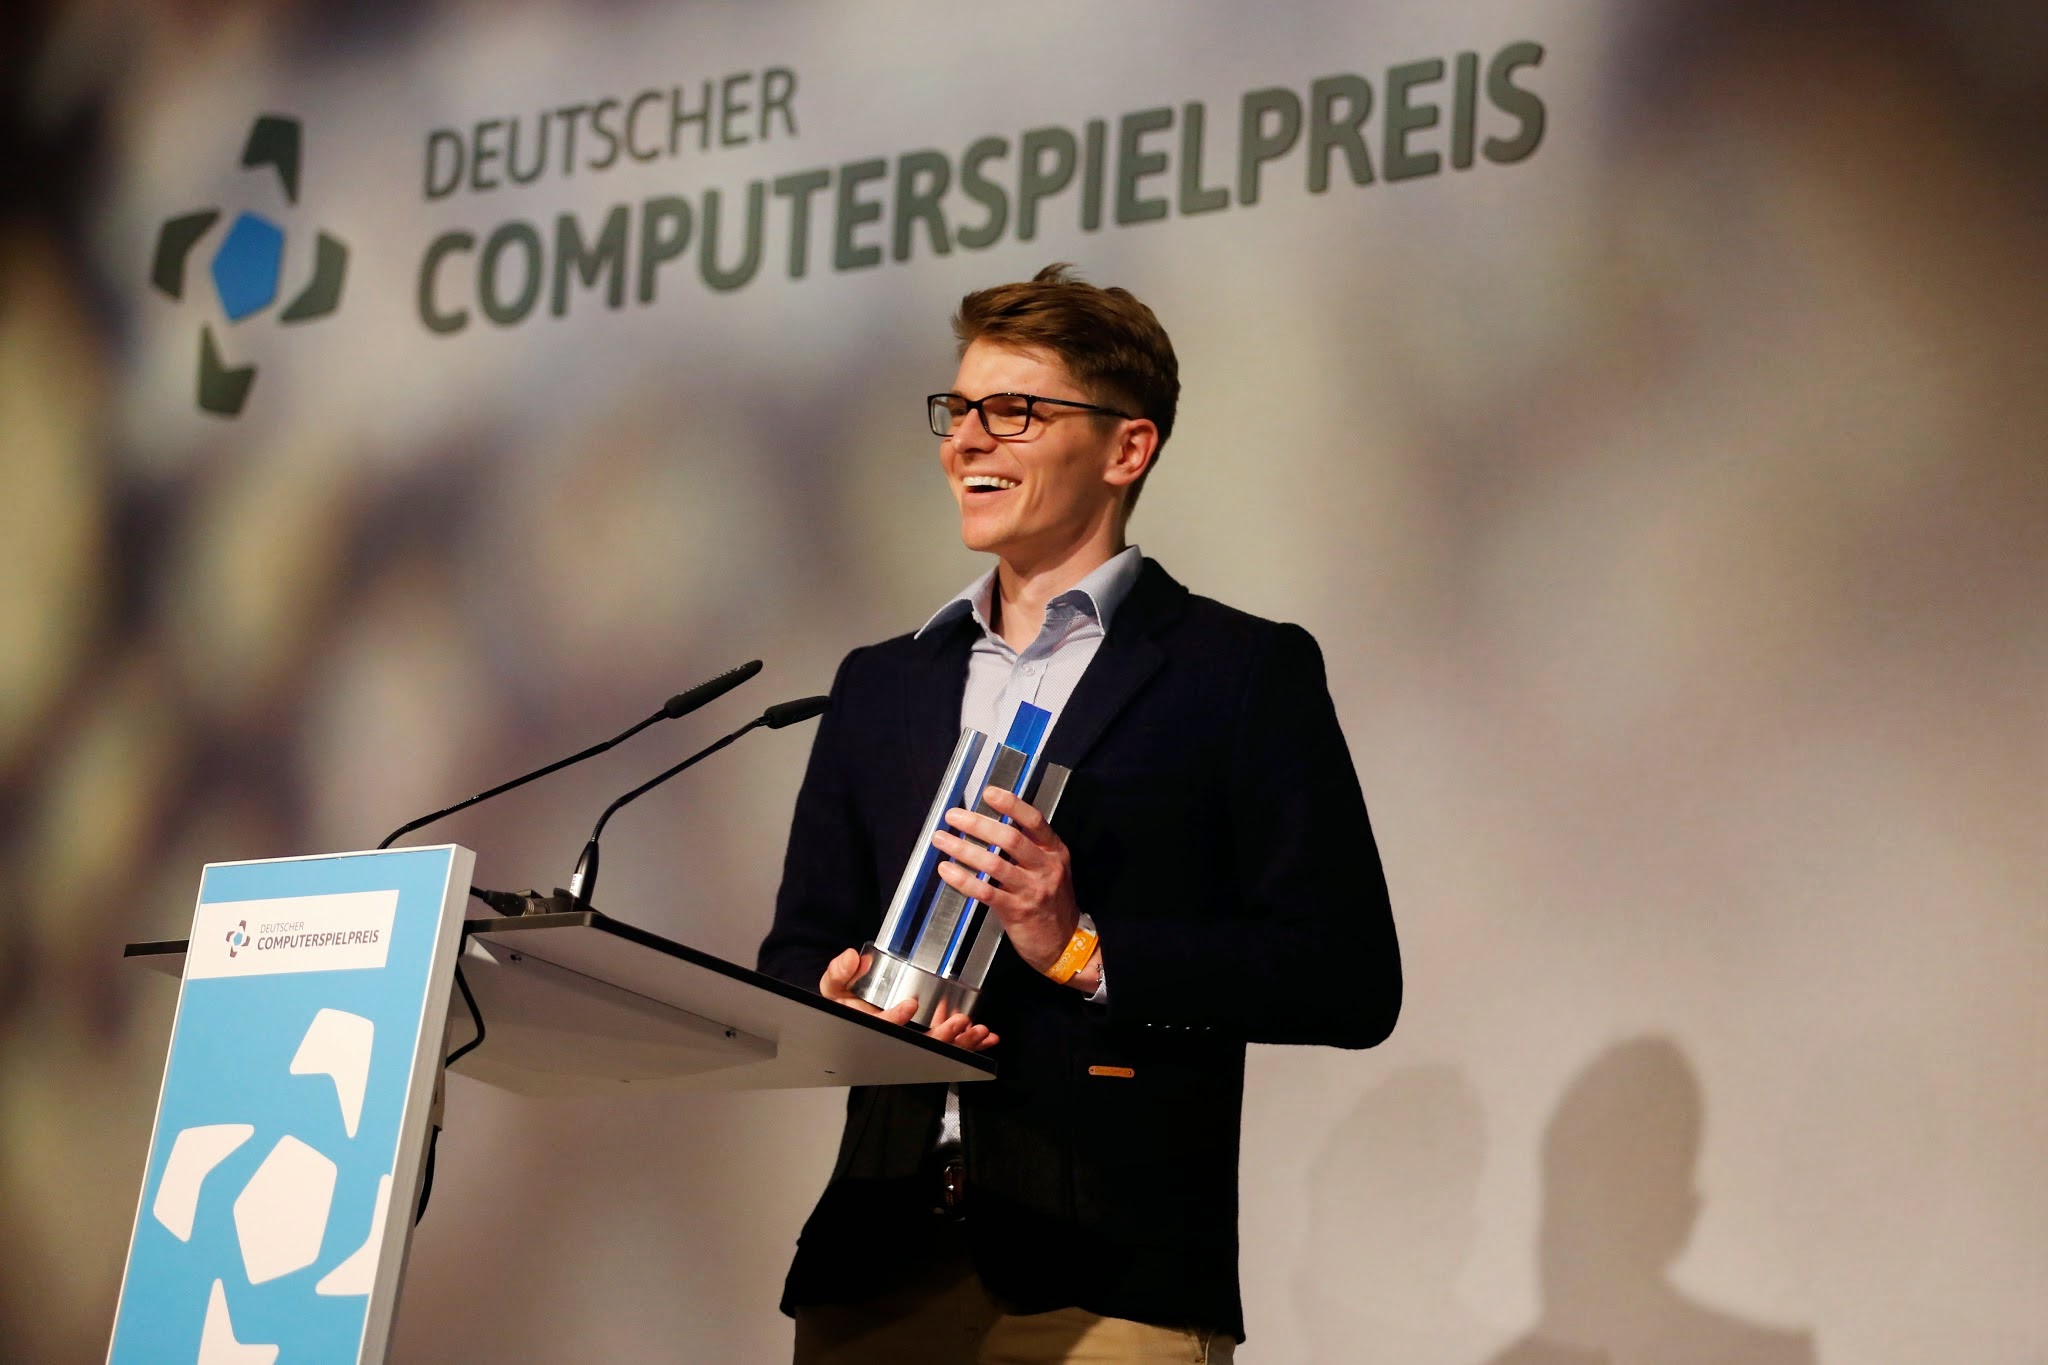 Deutscher Computerspielpreis 2015